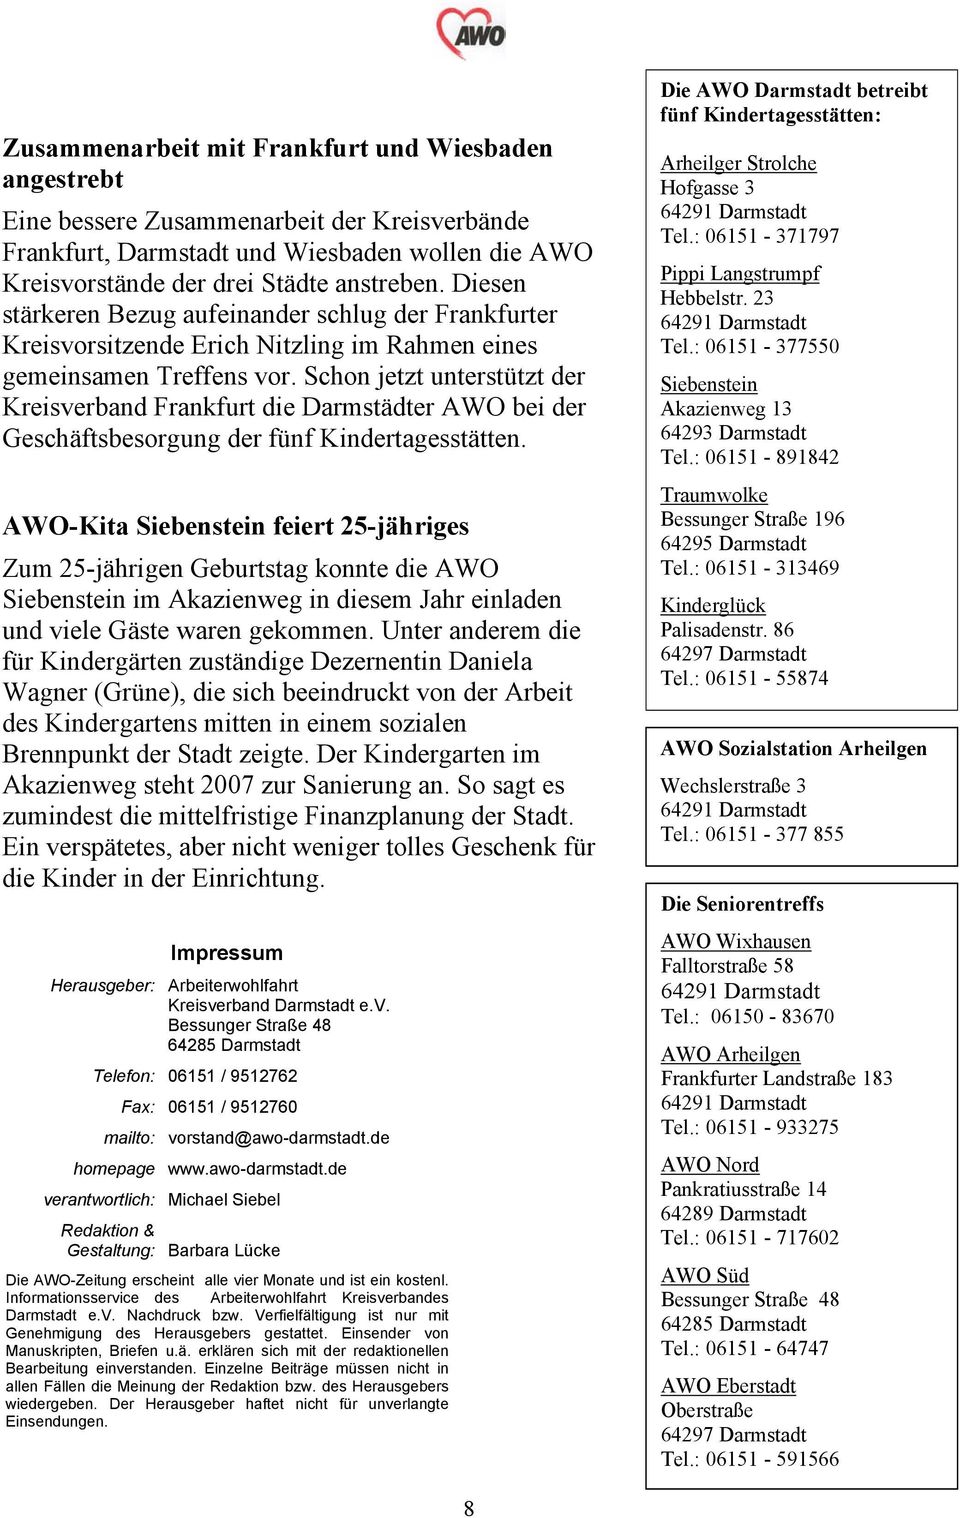 Schon jetzt unterstützt der Kreisverband Frankfurt die Darmstädter AWO bei der Geschäftsbesorgung der fünf Kindertagesstätten.